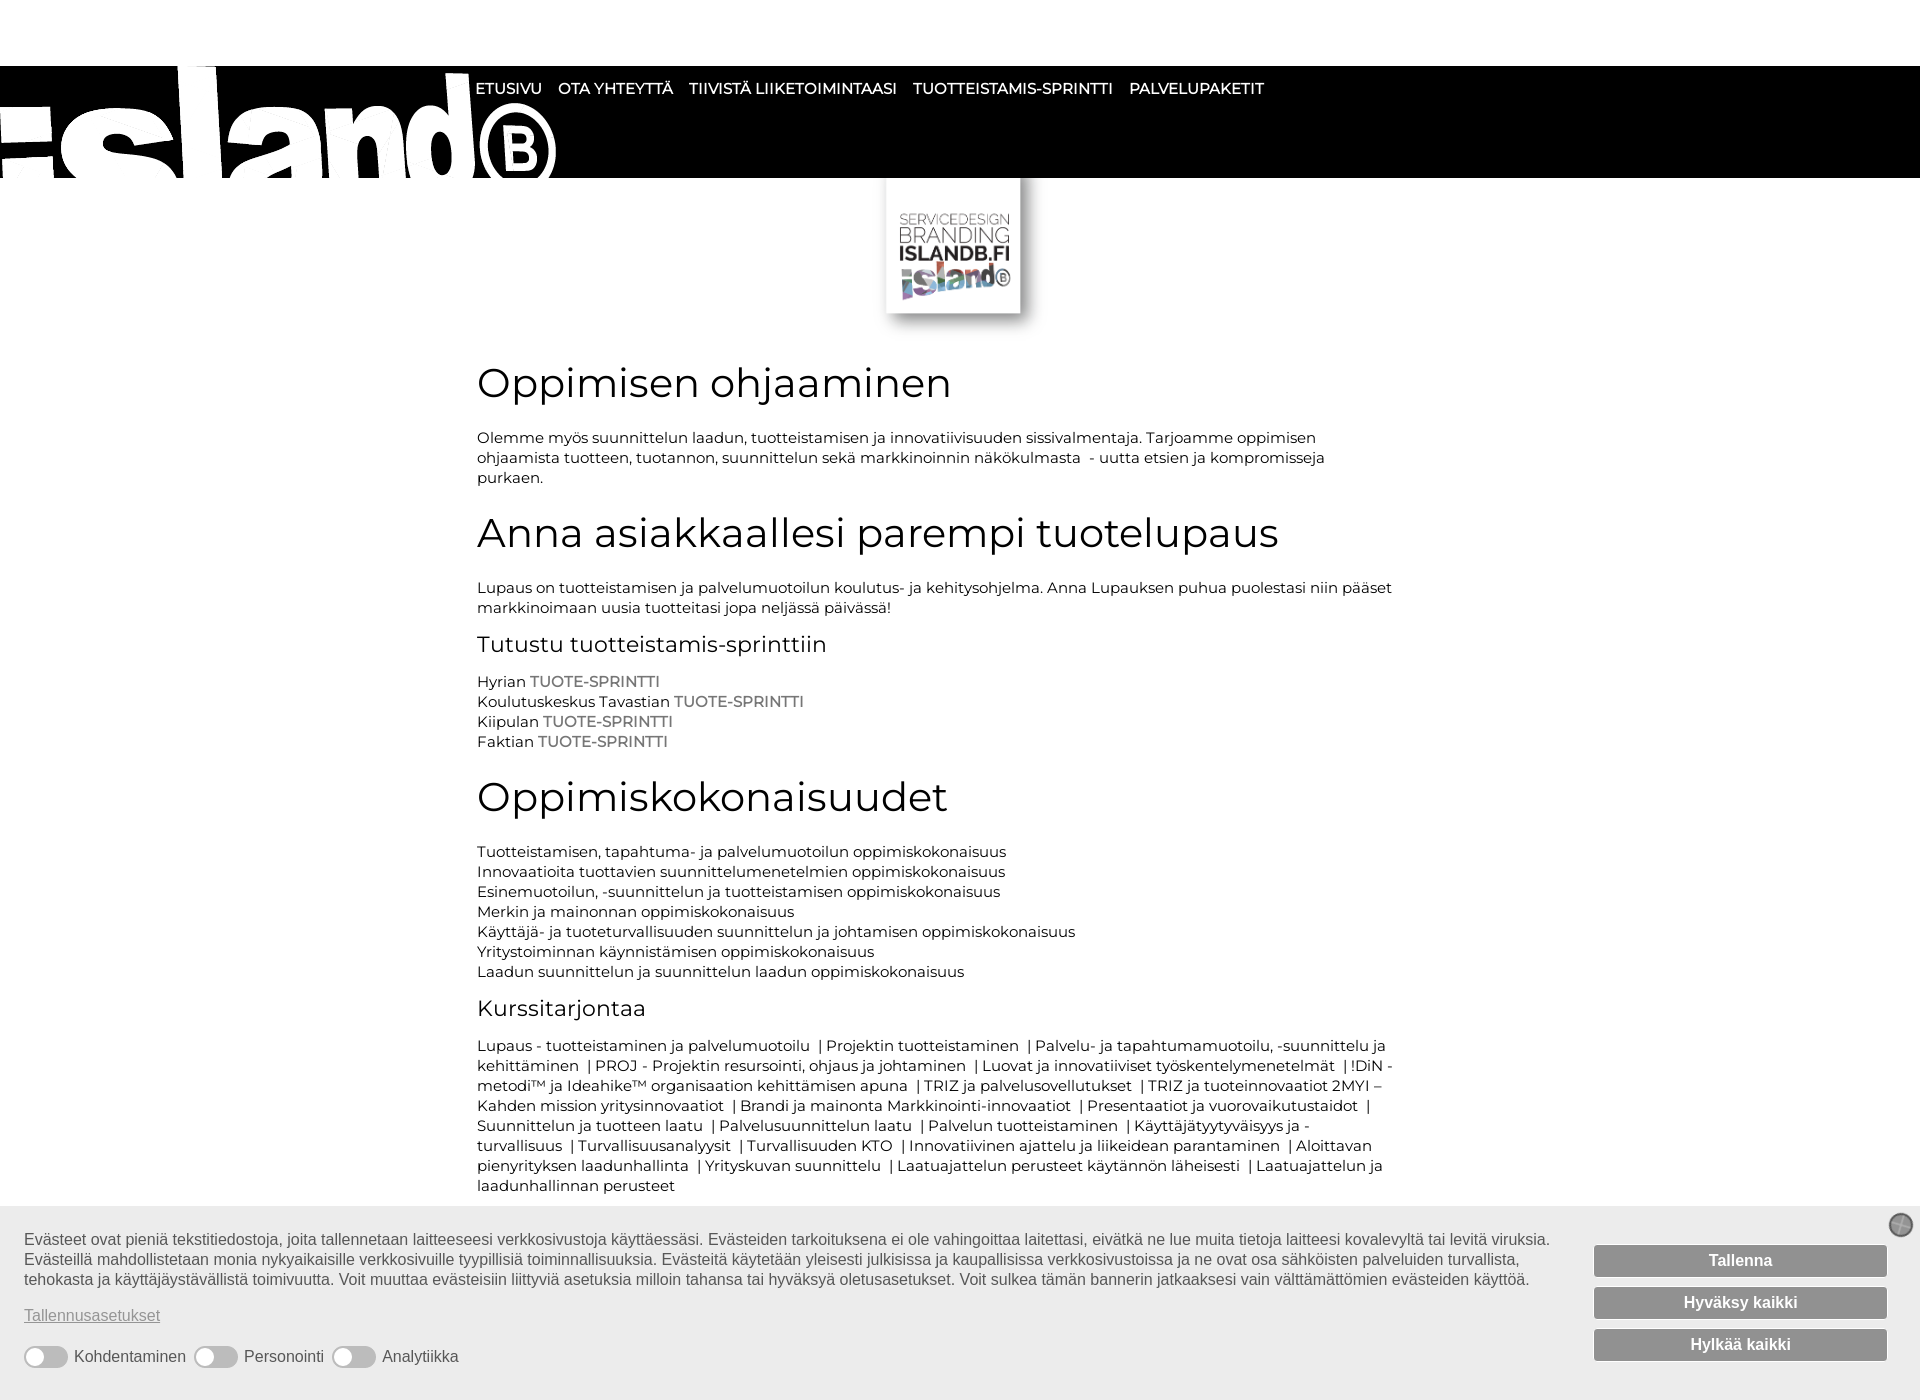 Screenshot for opin.fi